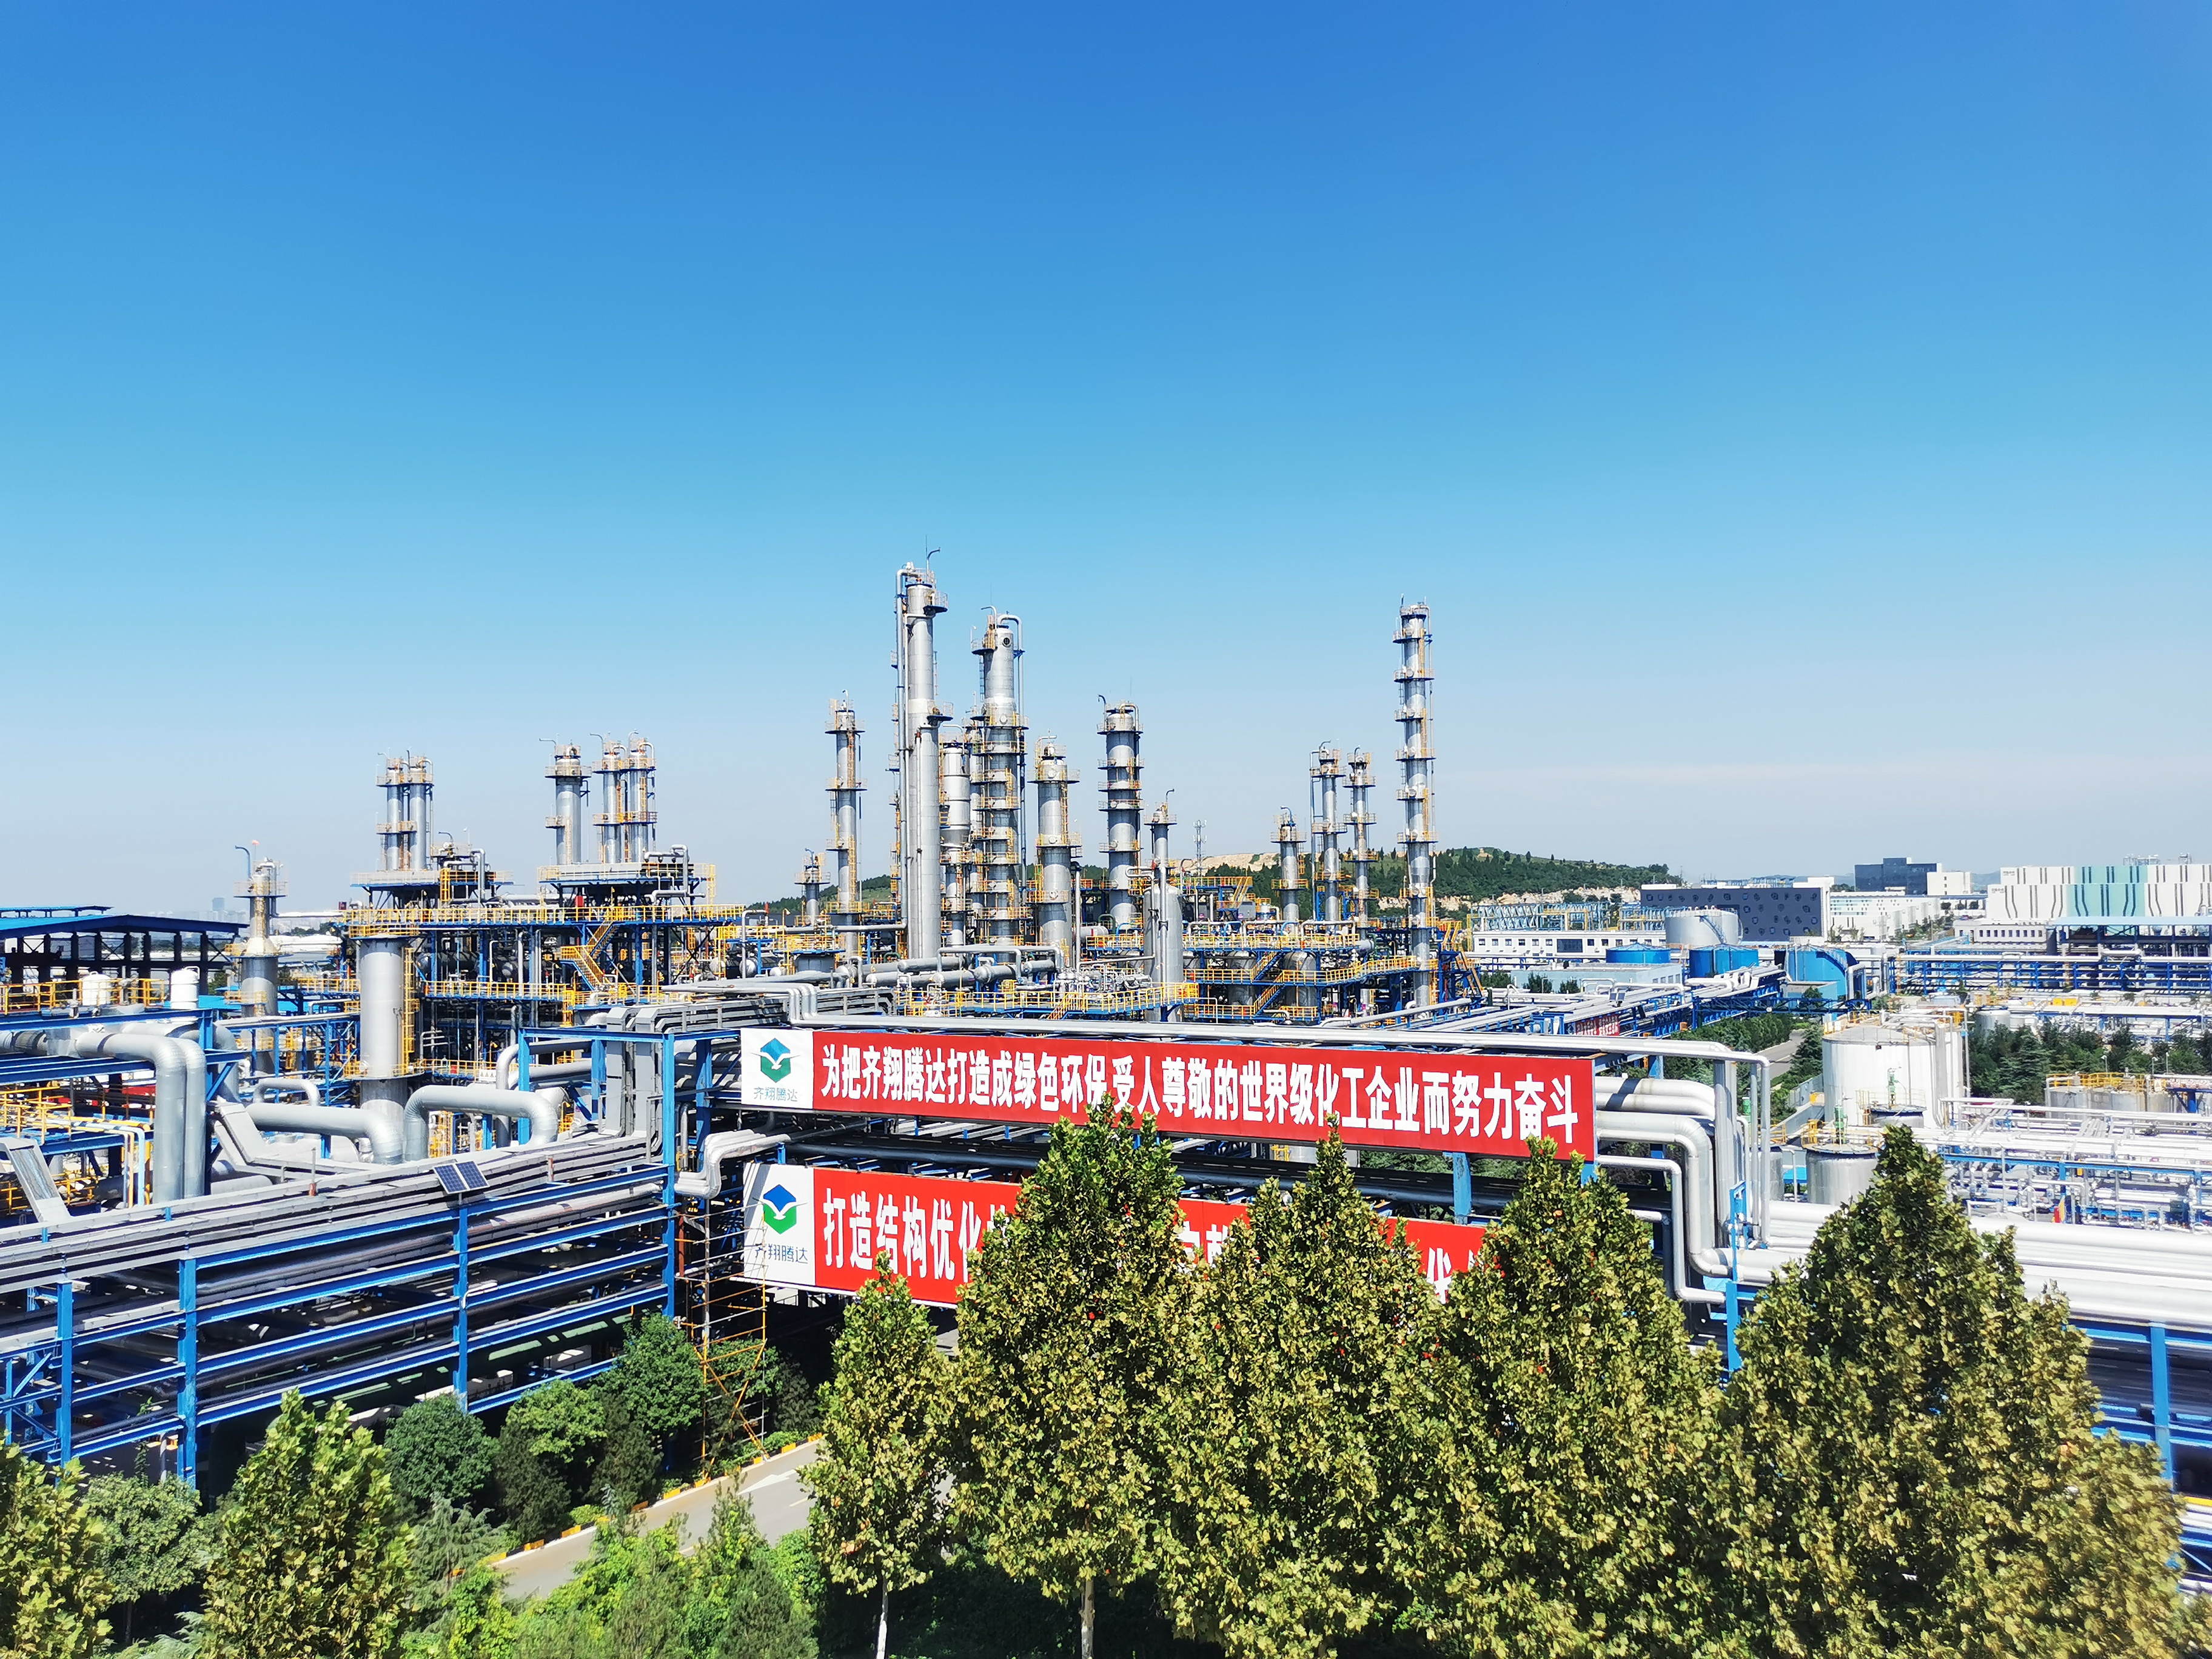 Qixiang Tengda's chemical production facilities in Zibo, Shandong province. 
(© Qixiang Tengda)